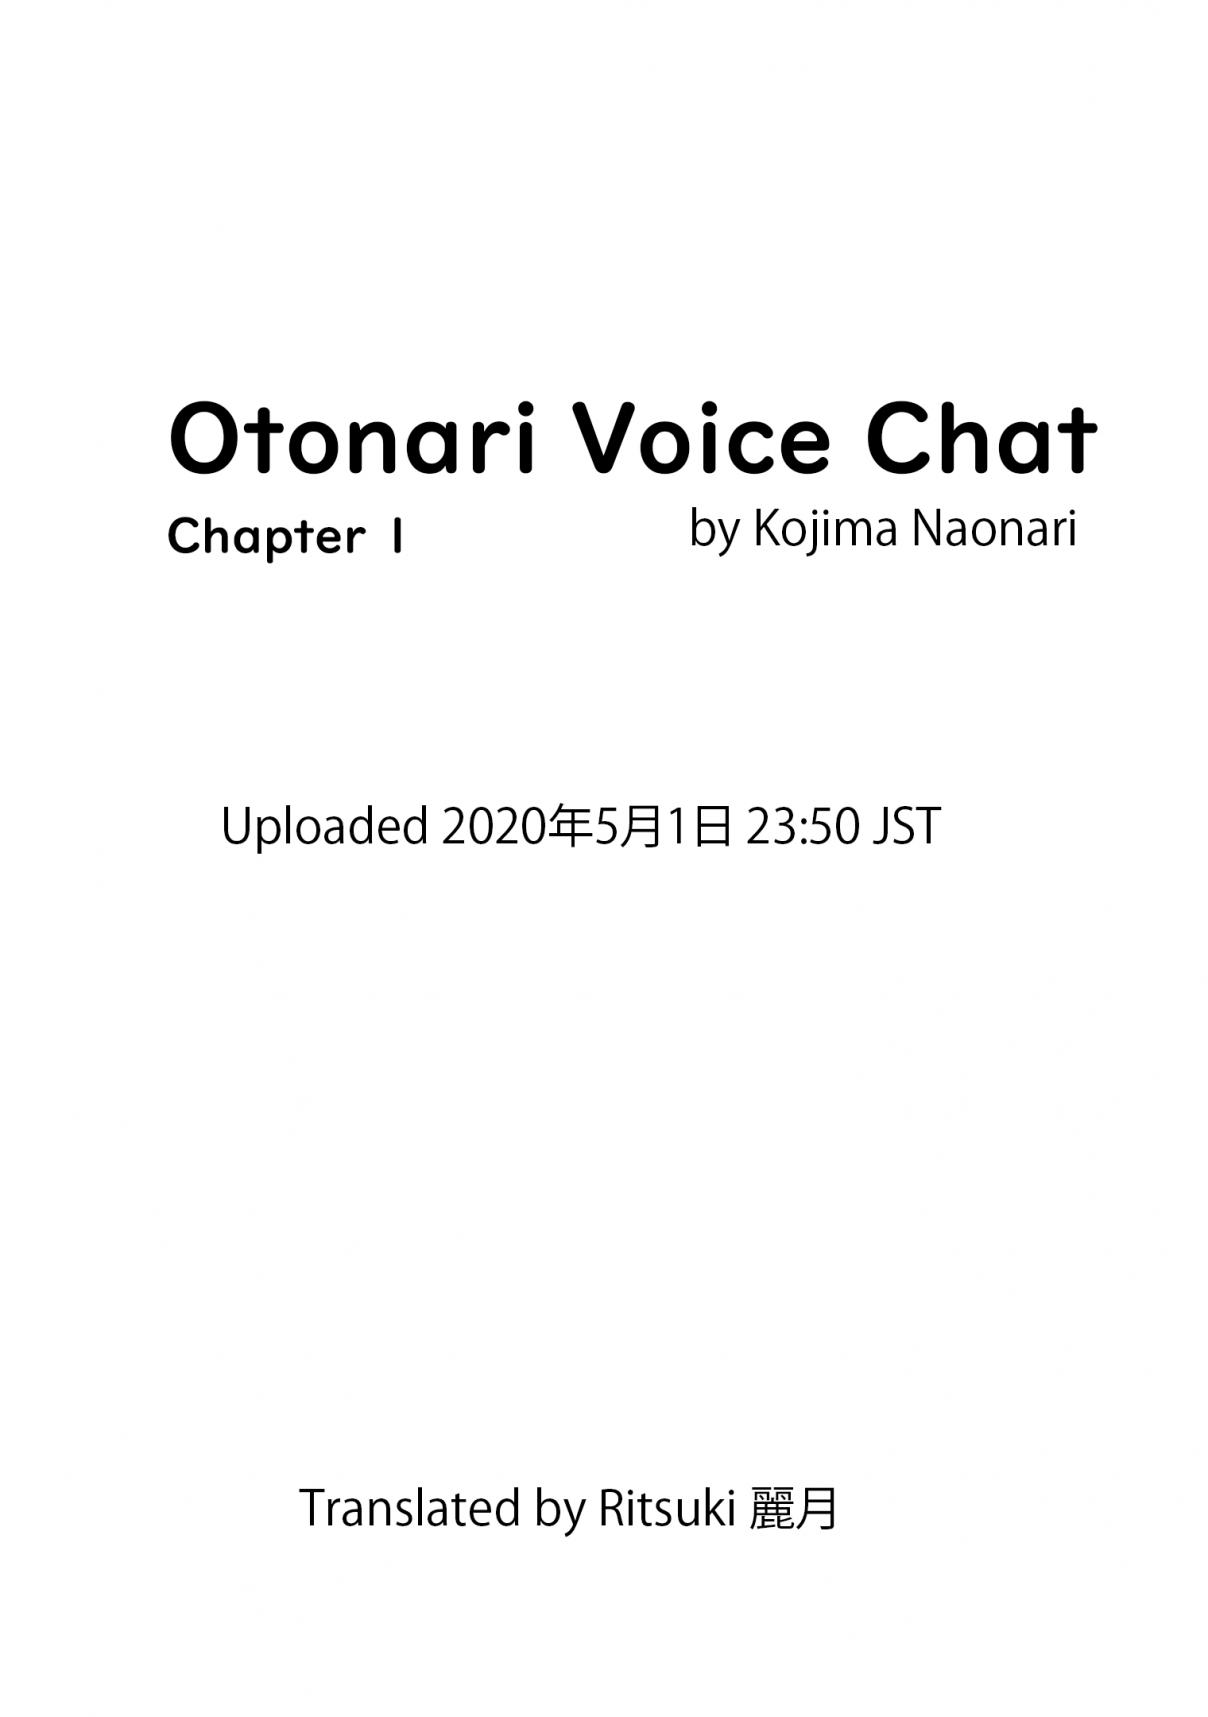 Otonari Voice Chat Vol. 1 Ch. 1